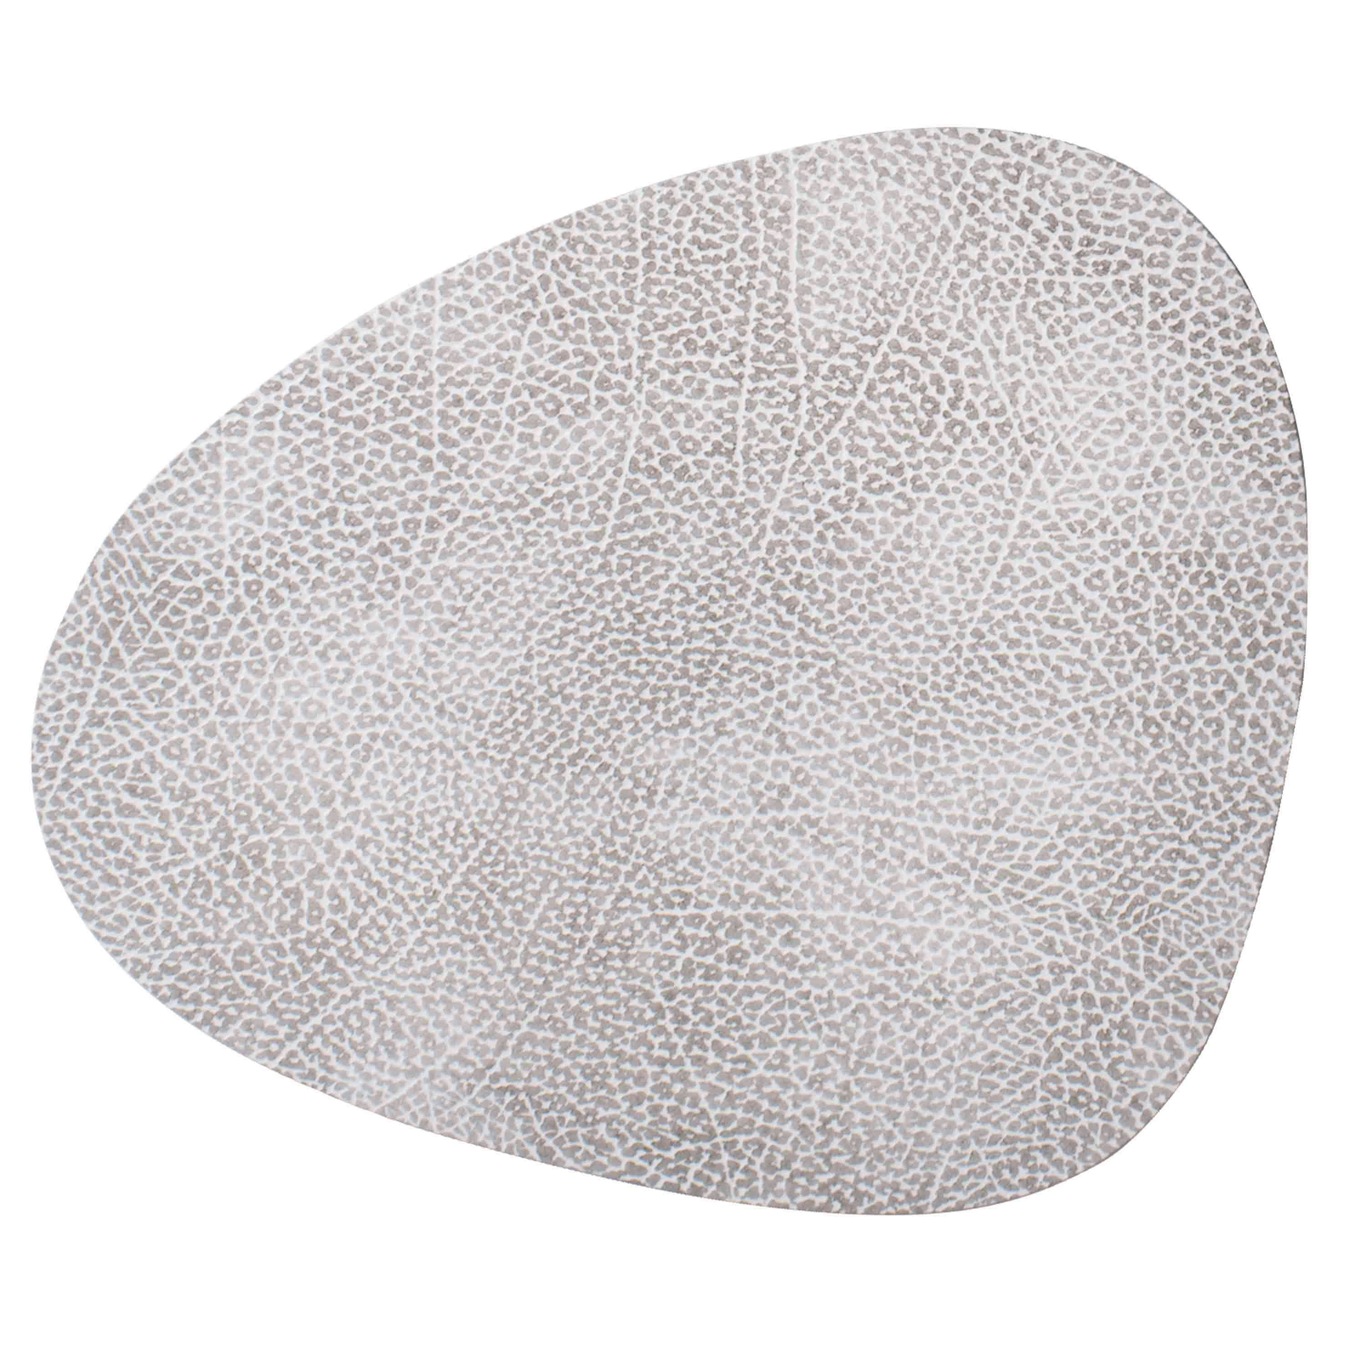 Curve Hippo Tischset S, 24x28 cm, Weiß/Grau